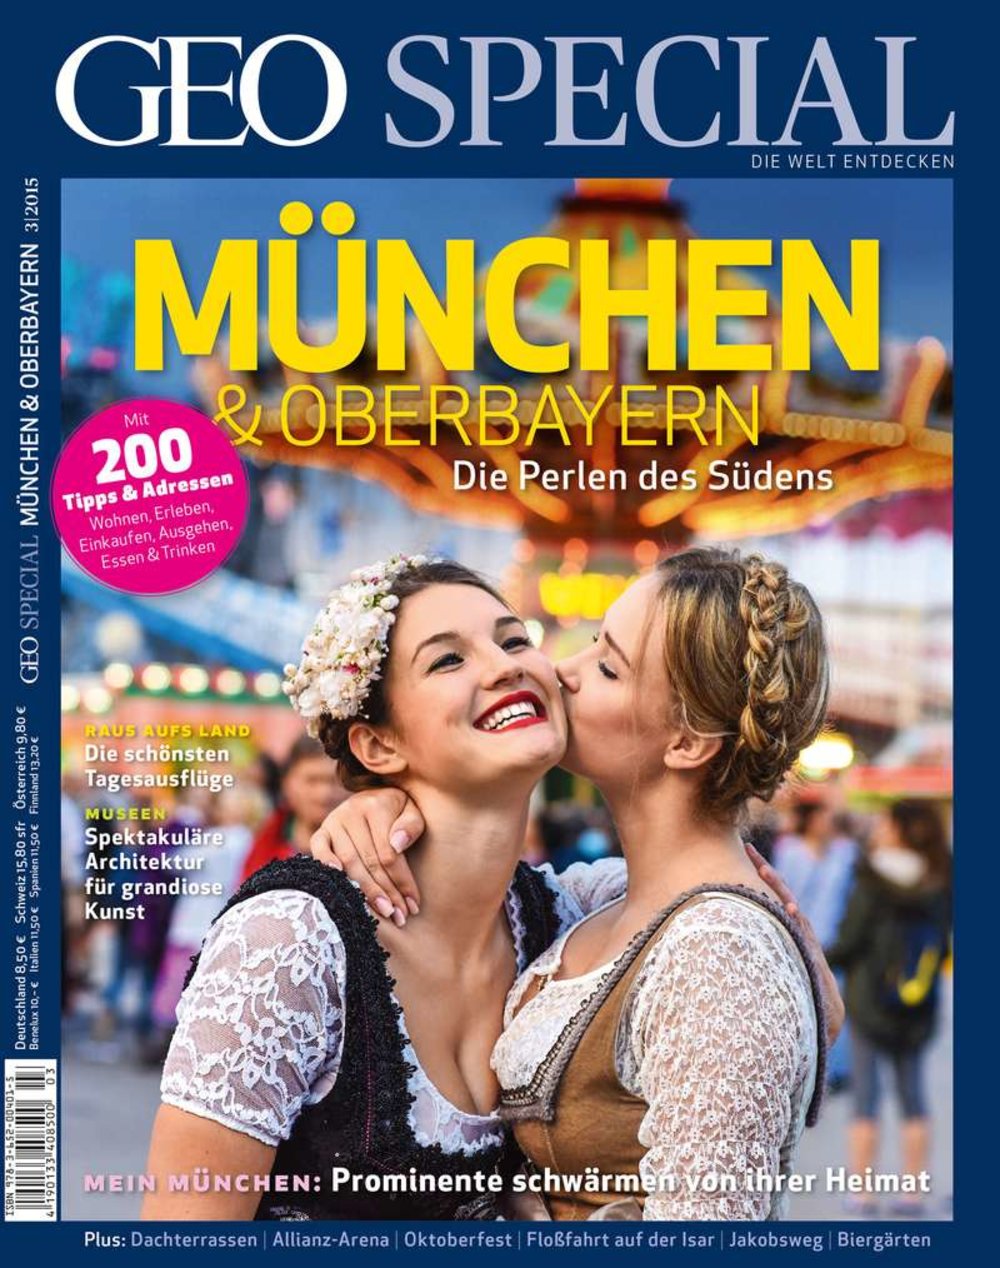 Themenpaket "Von München zu den Alpen"